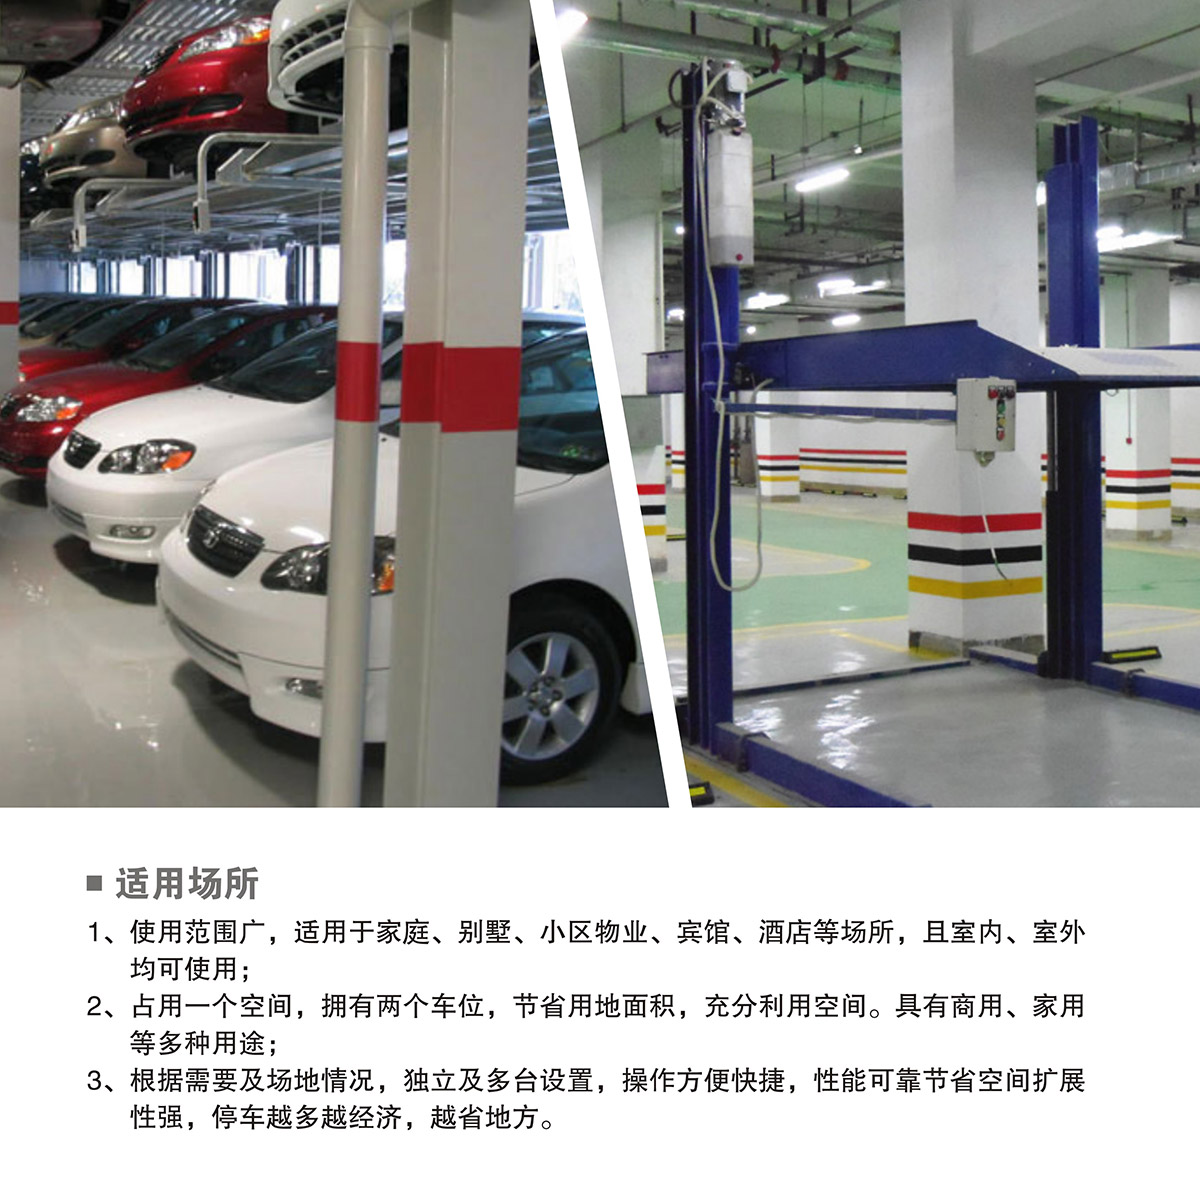 机械智能车库PJS两柱简易升降立体停车适用场所.jpg